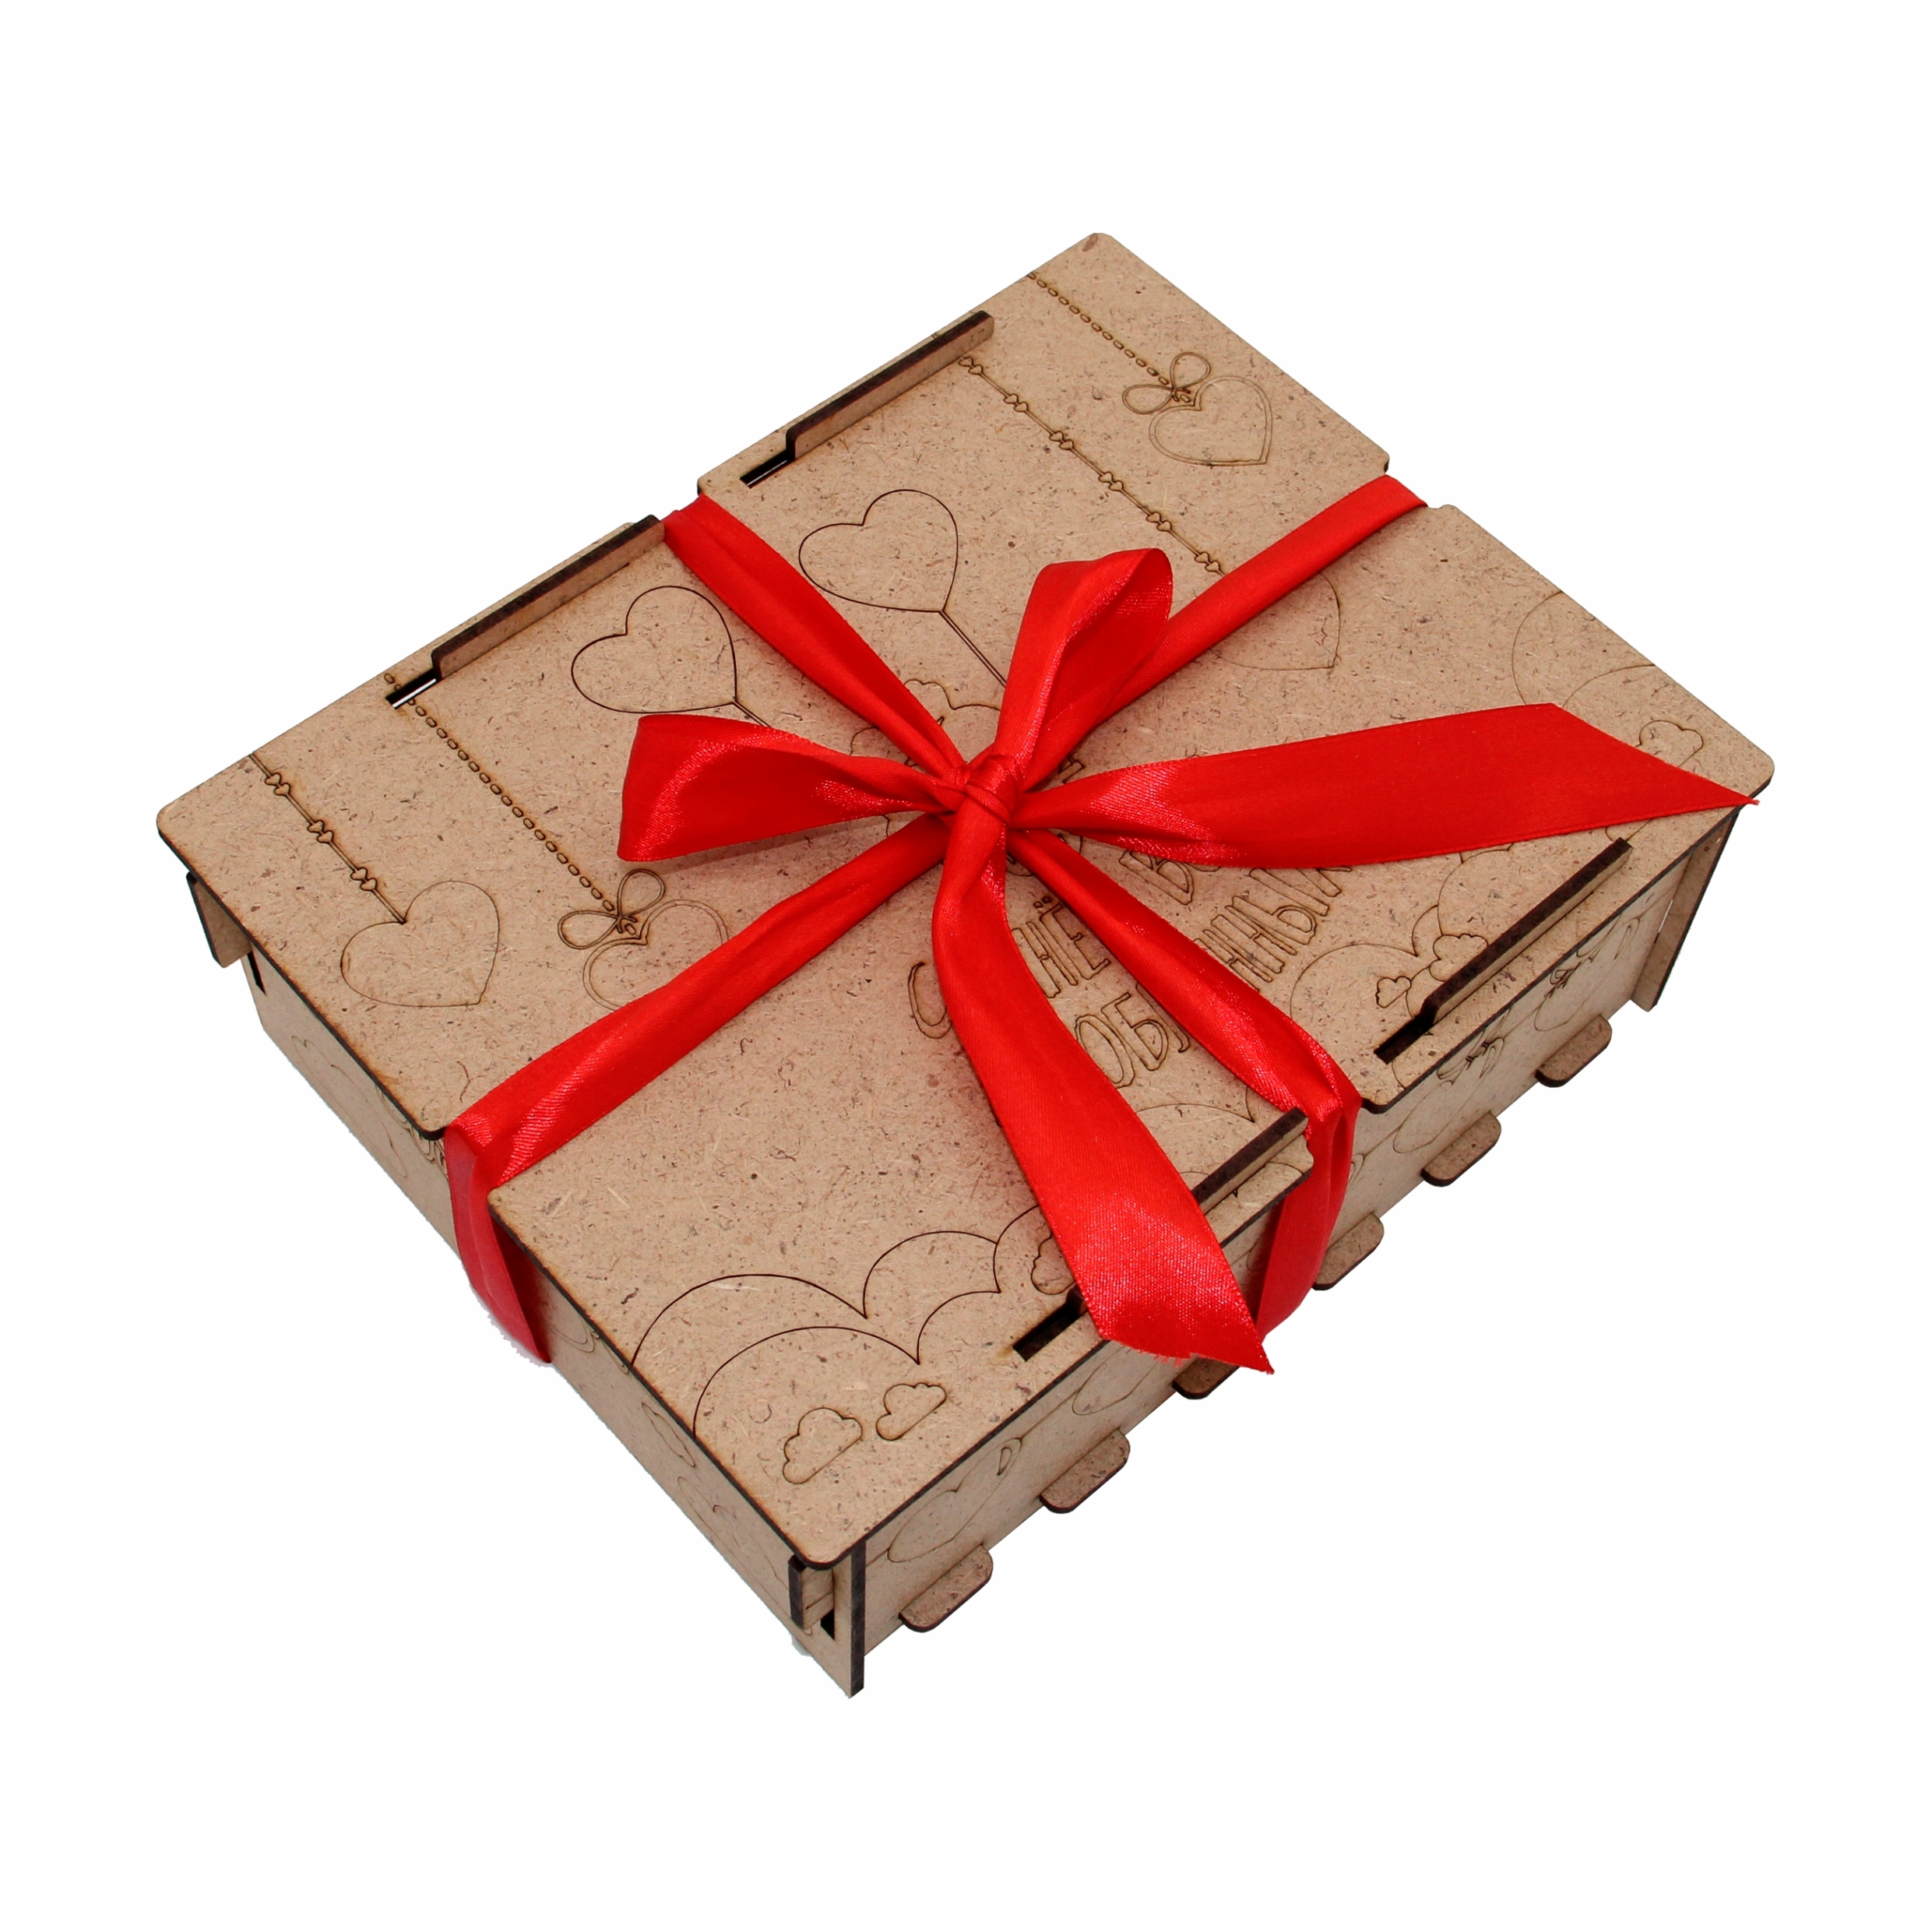 Купить коробку рязань. Подарочная коробка "встреча", 17,3 х 6,5 х 15 см 7082137. Коробка для подарка. Упаковать подарок. Многоуровневая коробка для подарка.